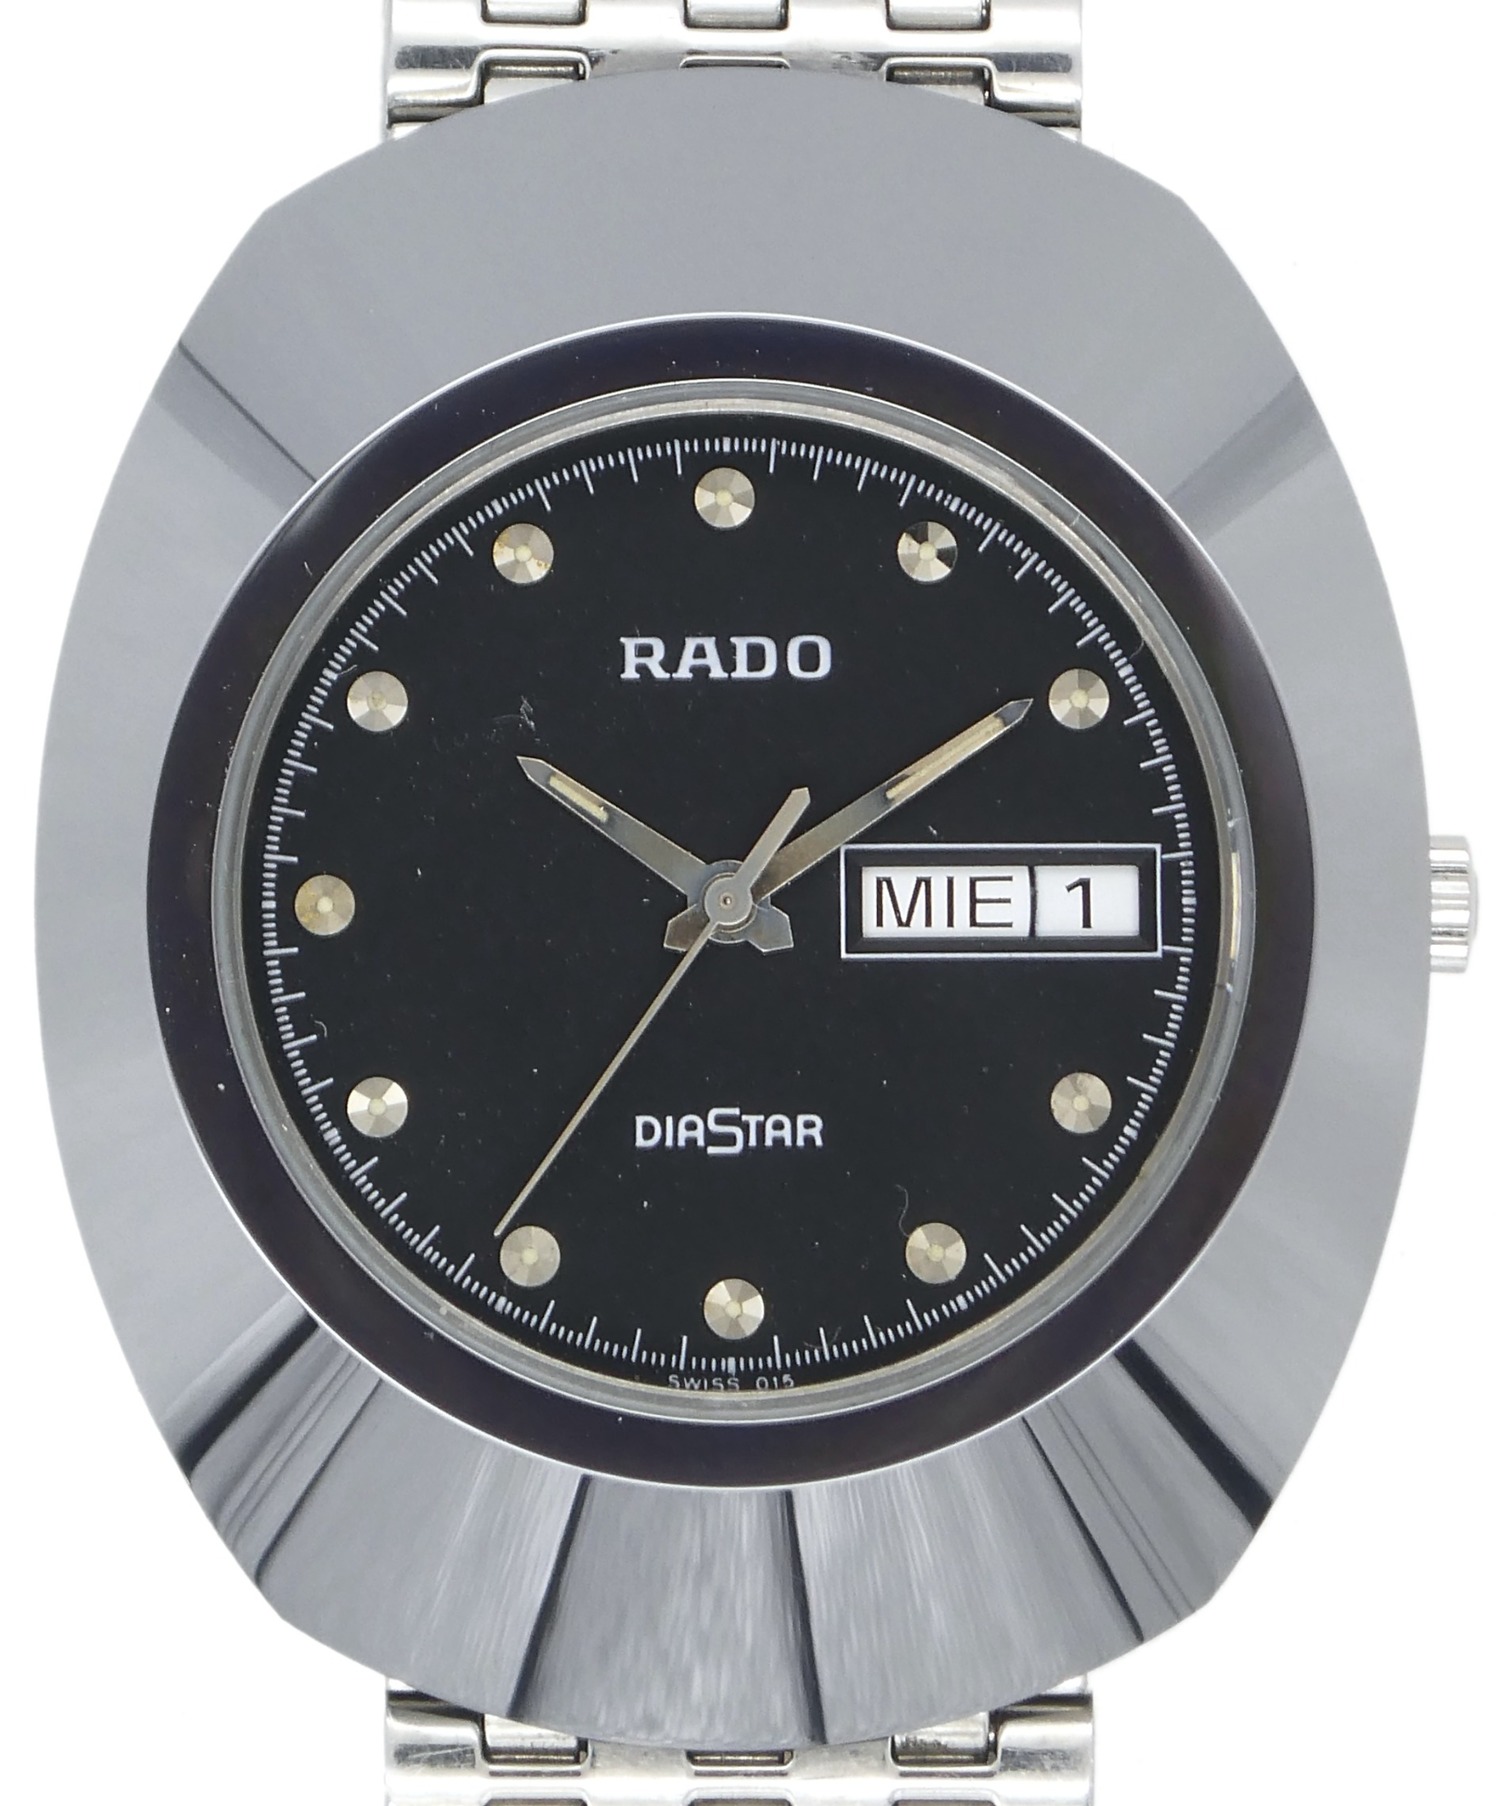 ラドー ブランド ブラック 腕時計 クォーツ DIASTAR メンズ レディース